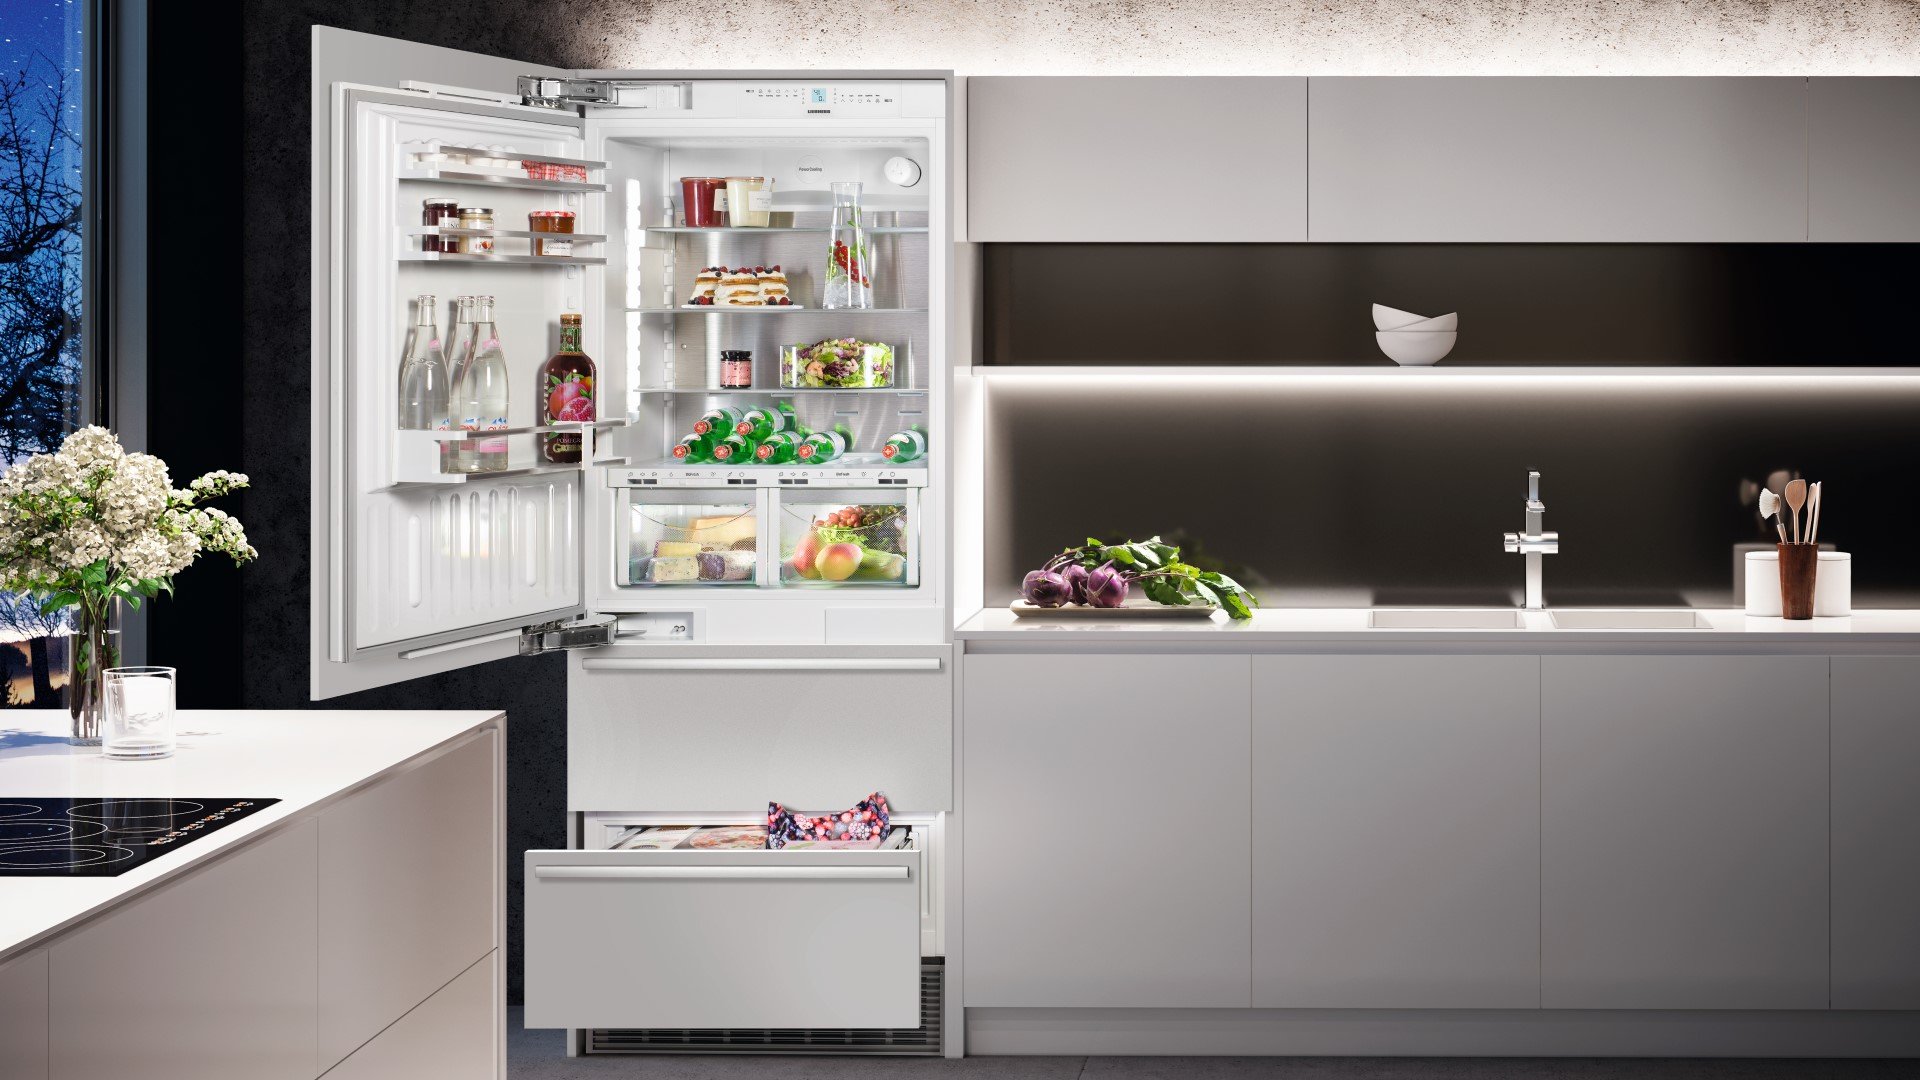 Устранение ошибки E01 в холодильнике Liebherr: Пошаговое руководство